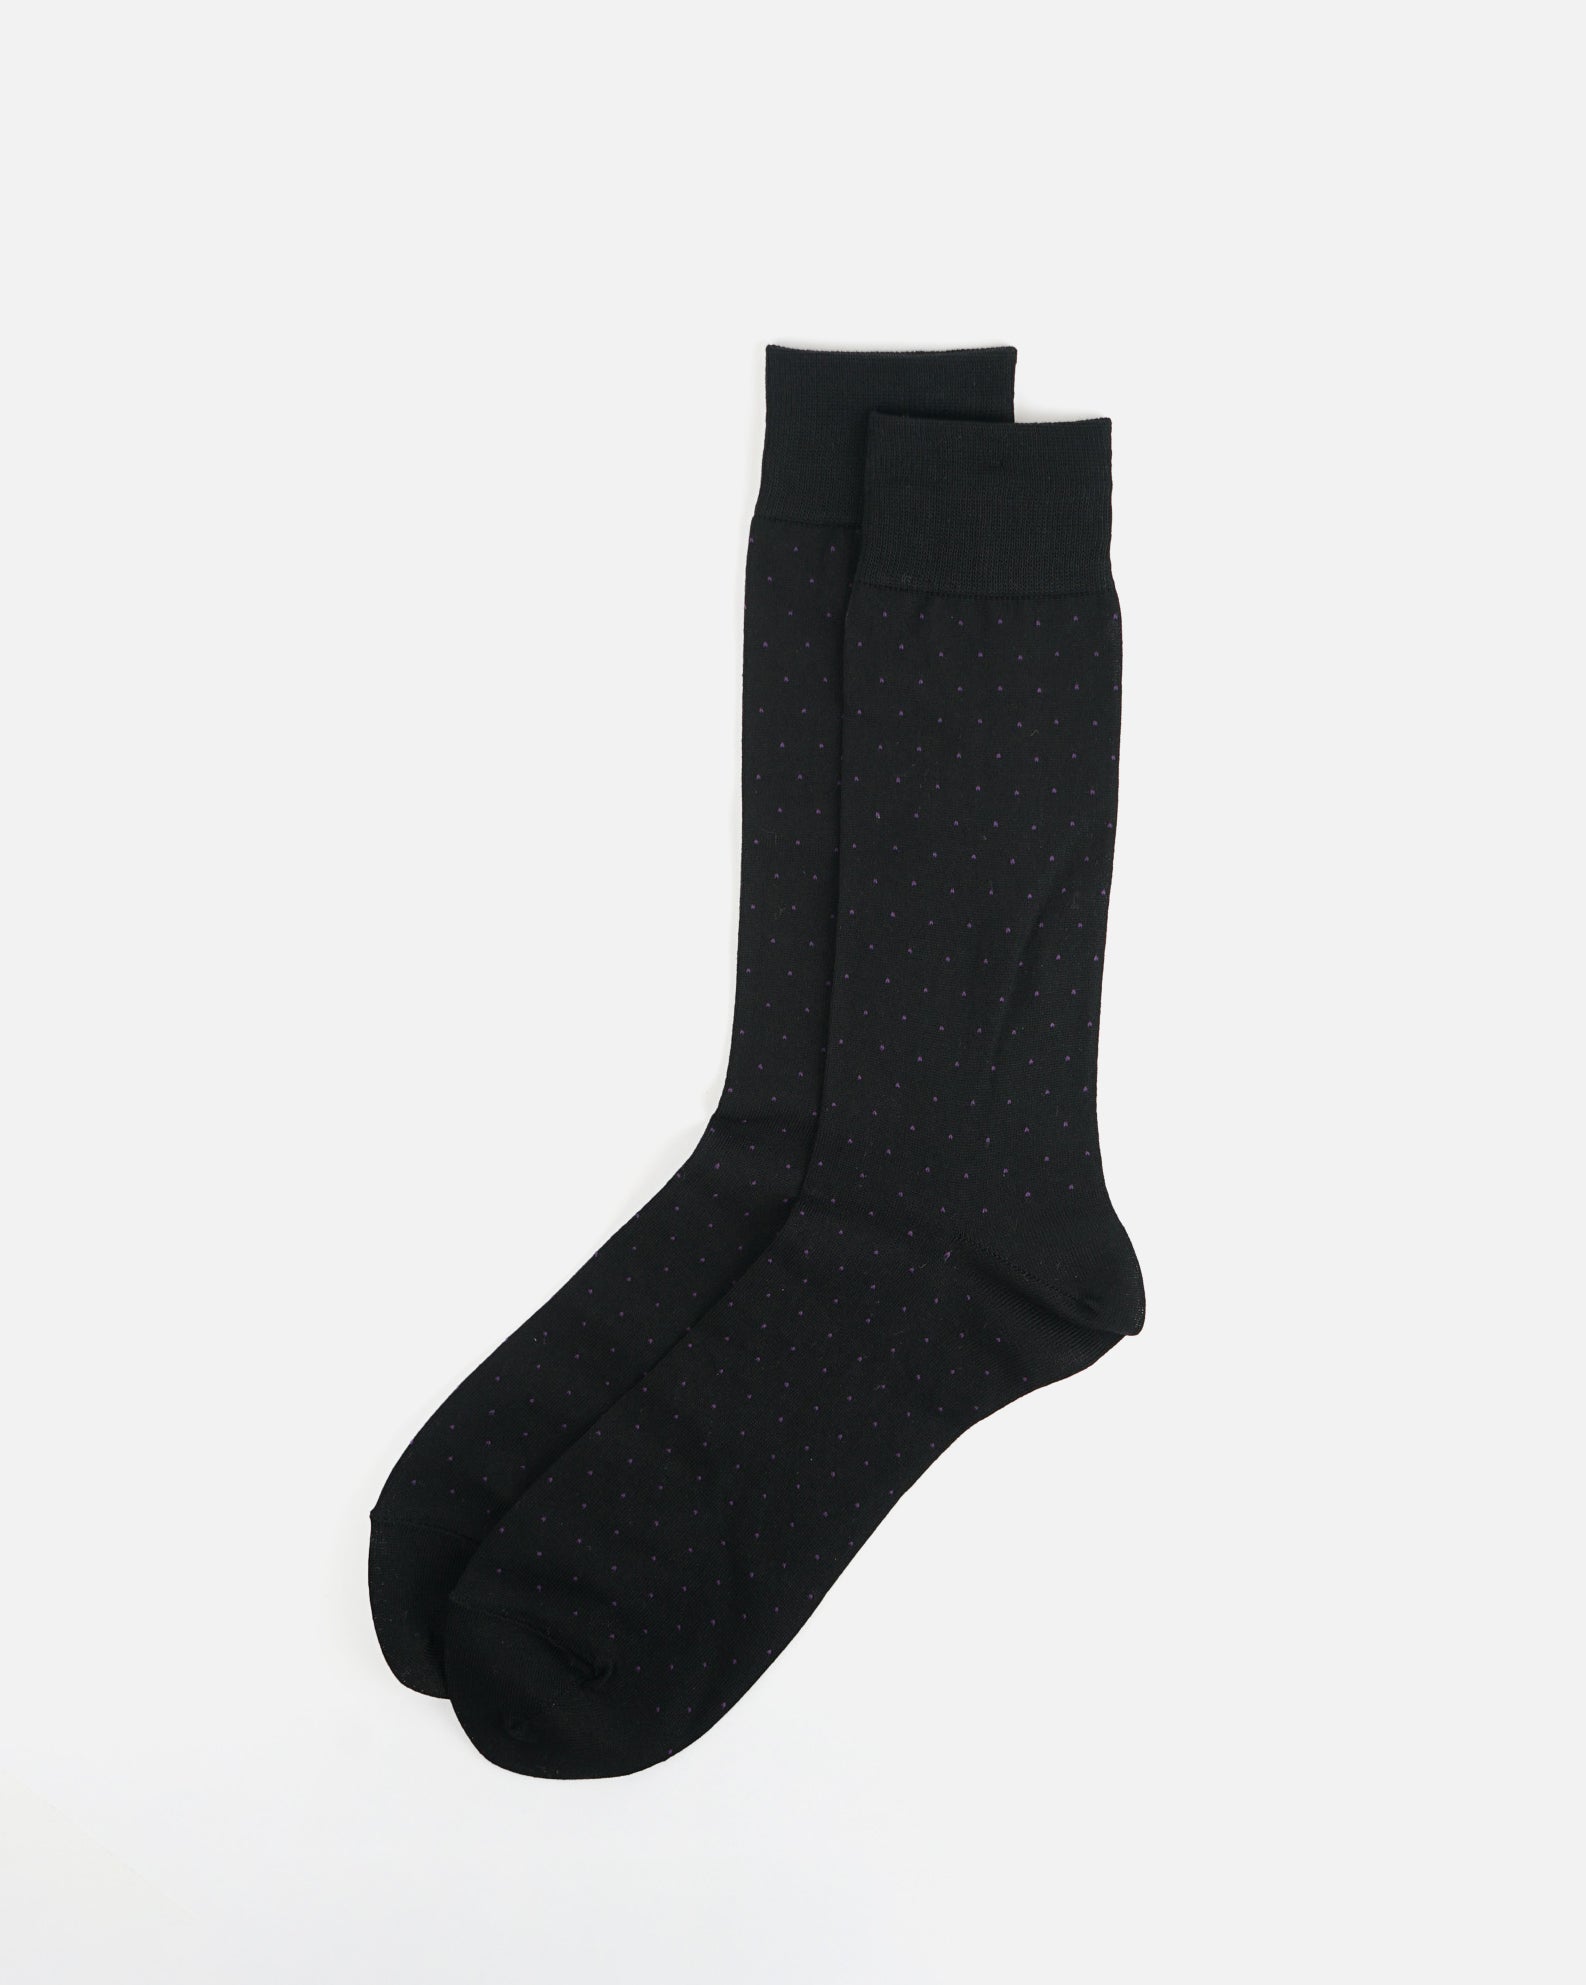 Polka Dot Dress Socks / Black